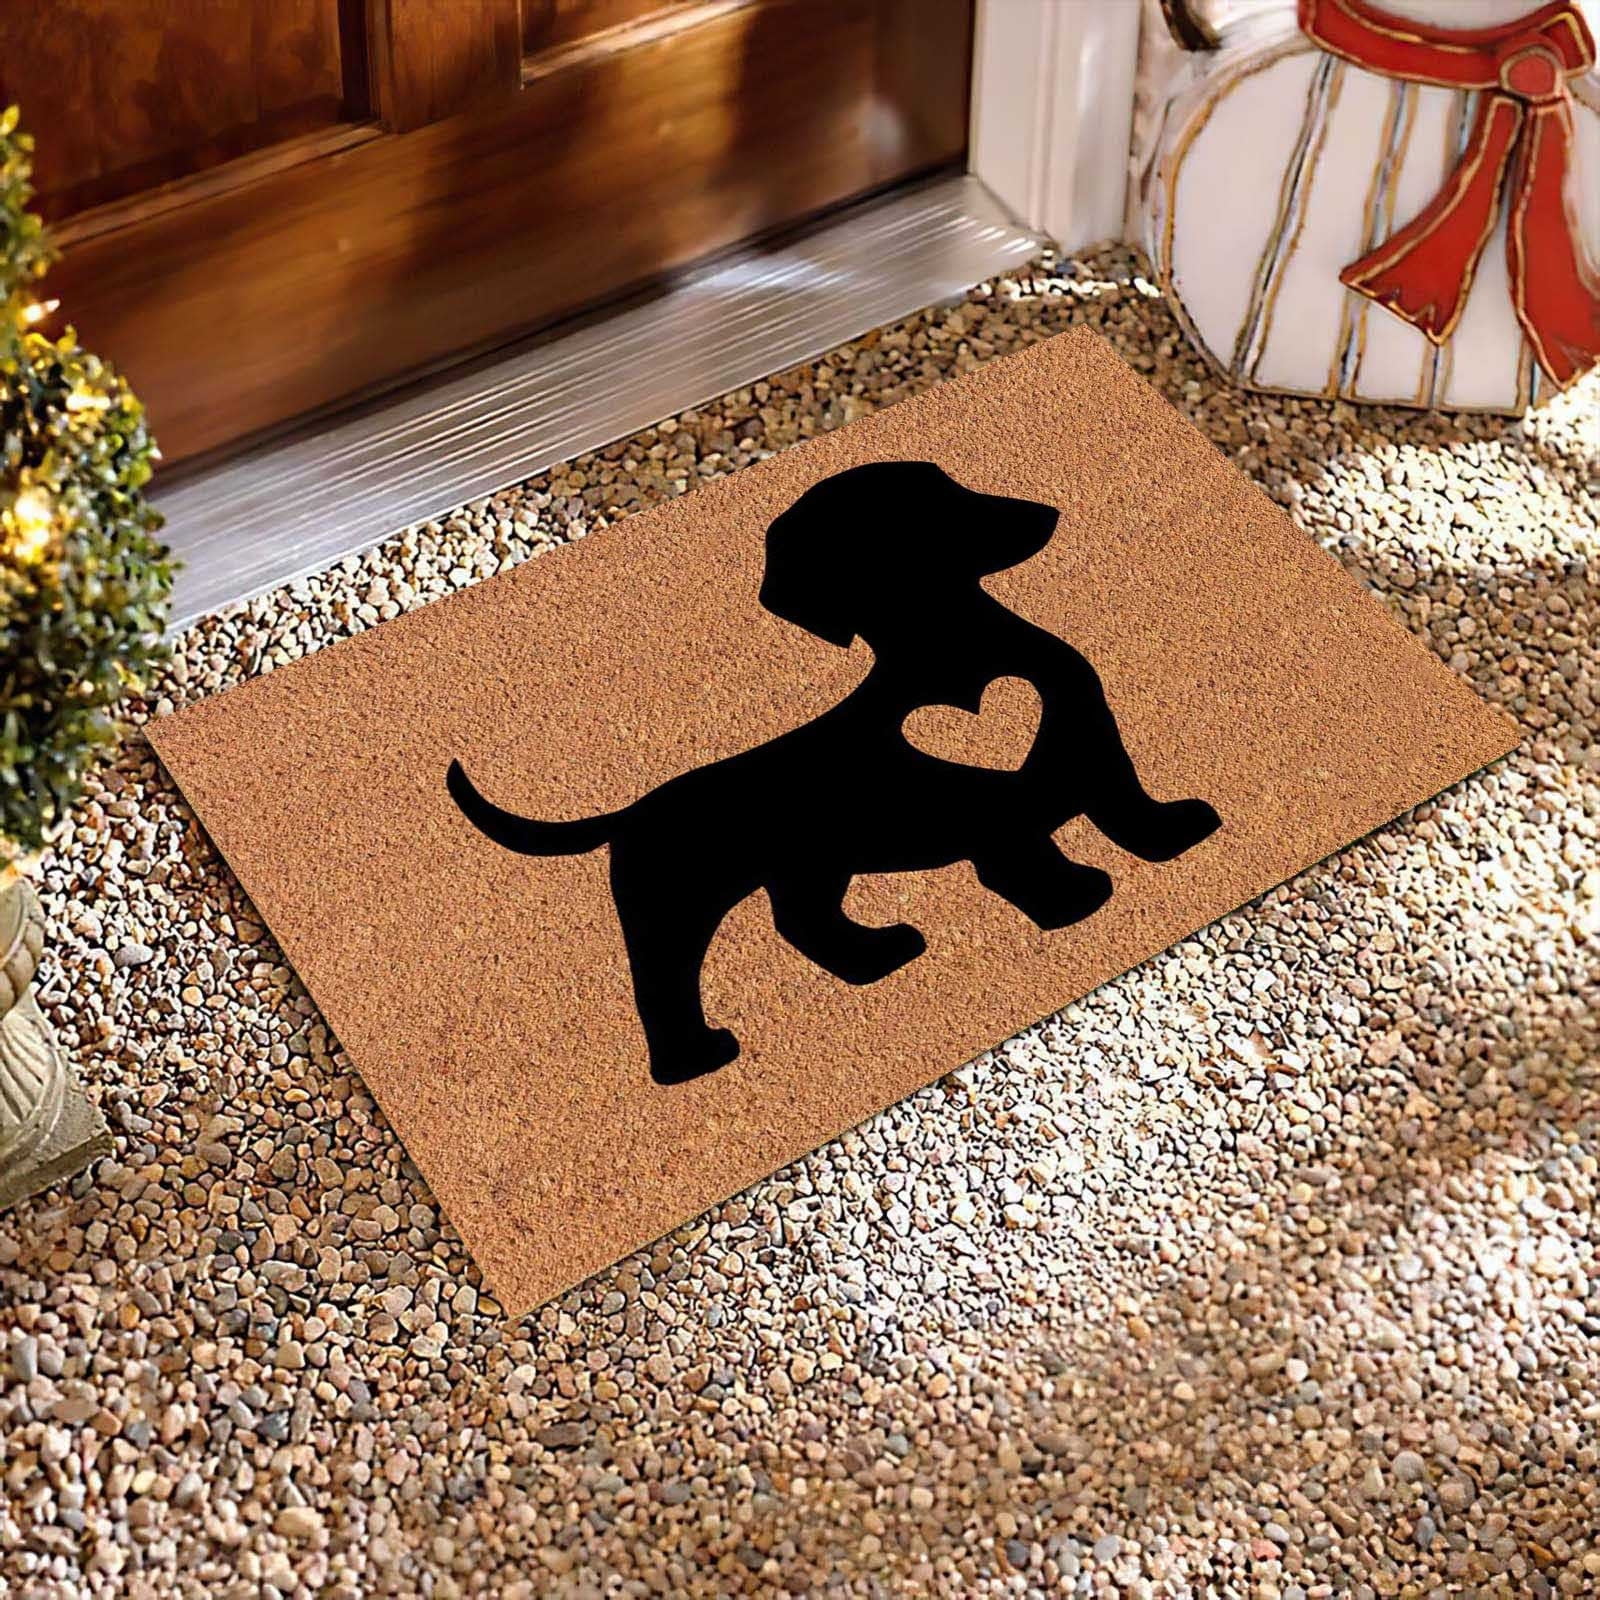 KIHOUT Deals Cute Pet Dog Themed Carpet,Welcome Floor Doormat